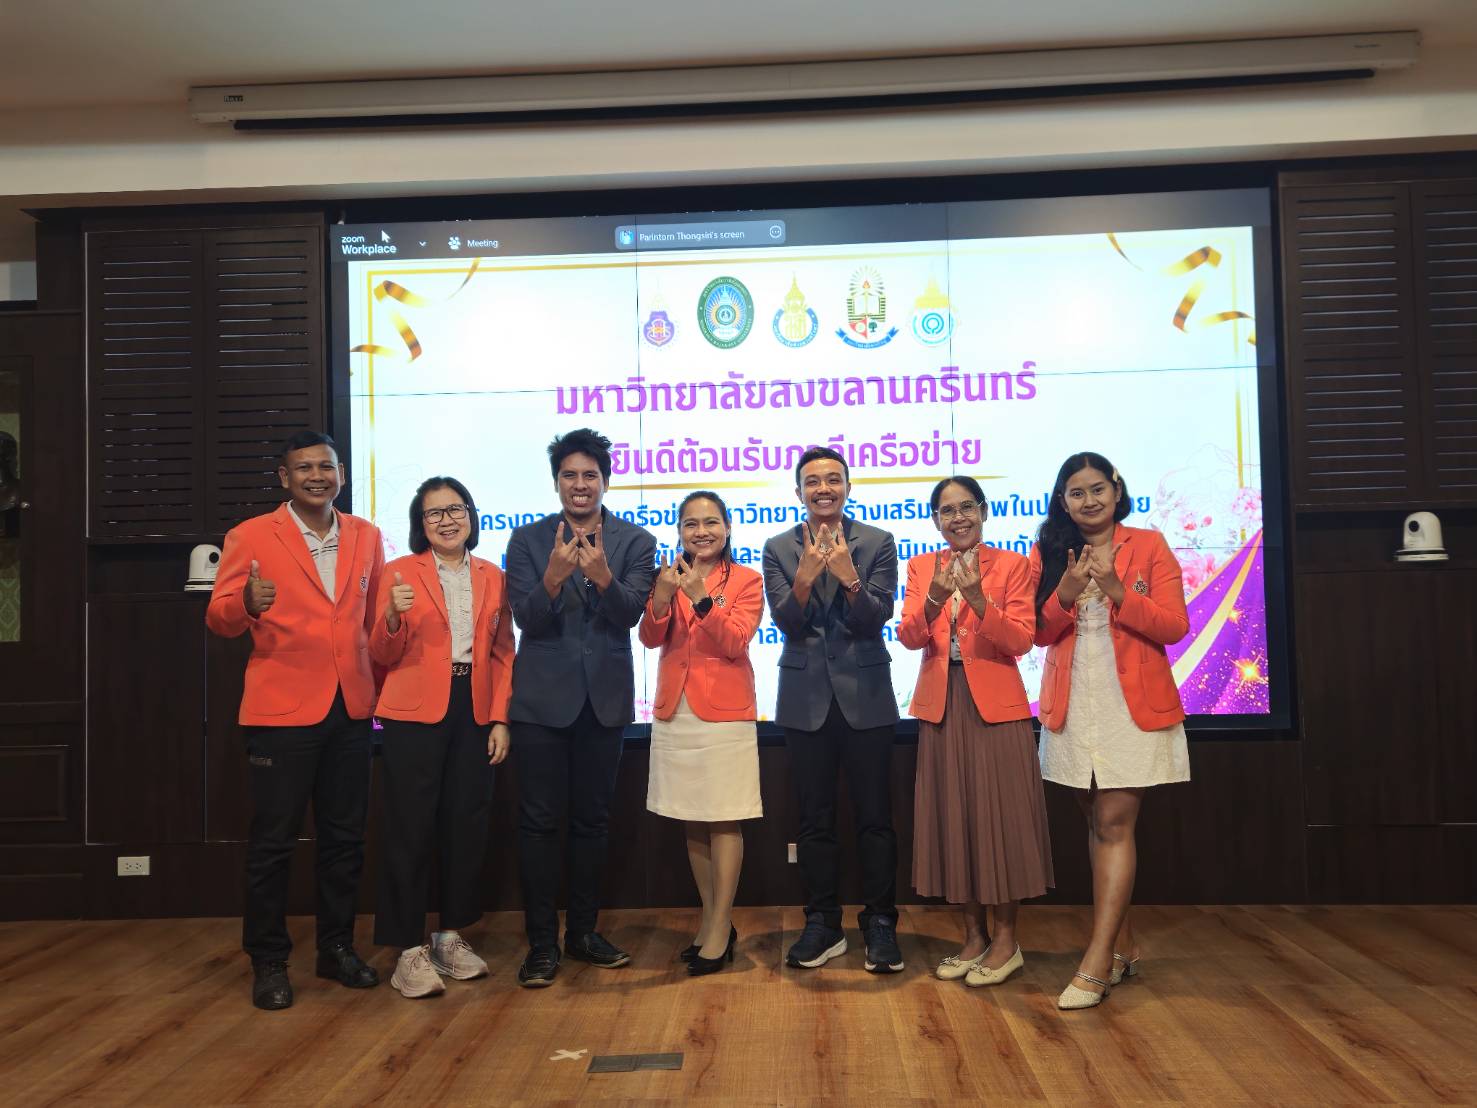 ม.วลัยลักษณลงนาม MOU เครือข่ายมหาวิทยาลัยเสริมสร้างสุขภาพในประเทศไทย